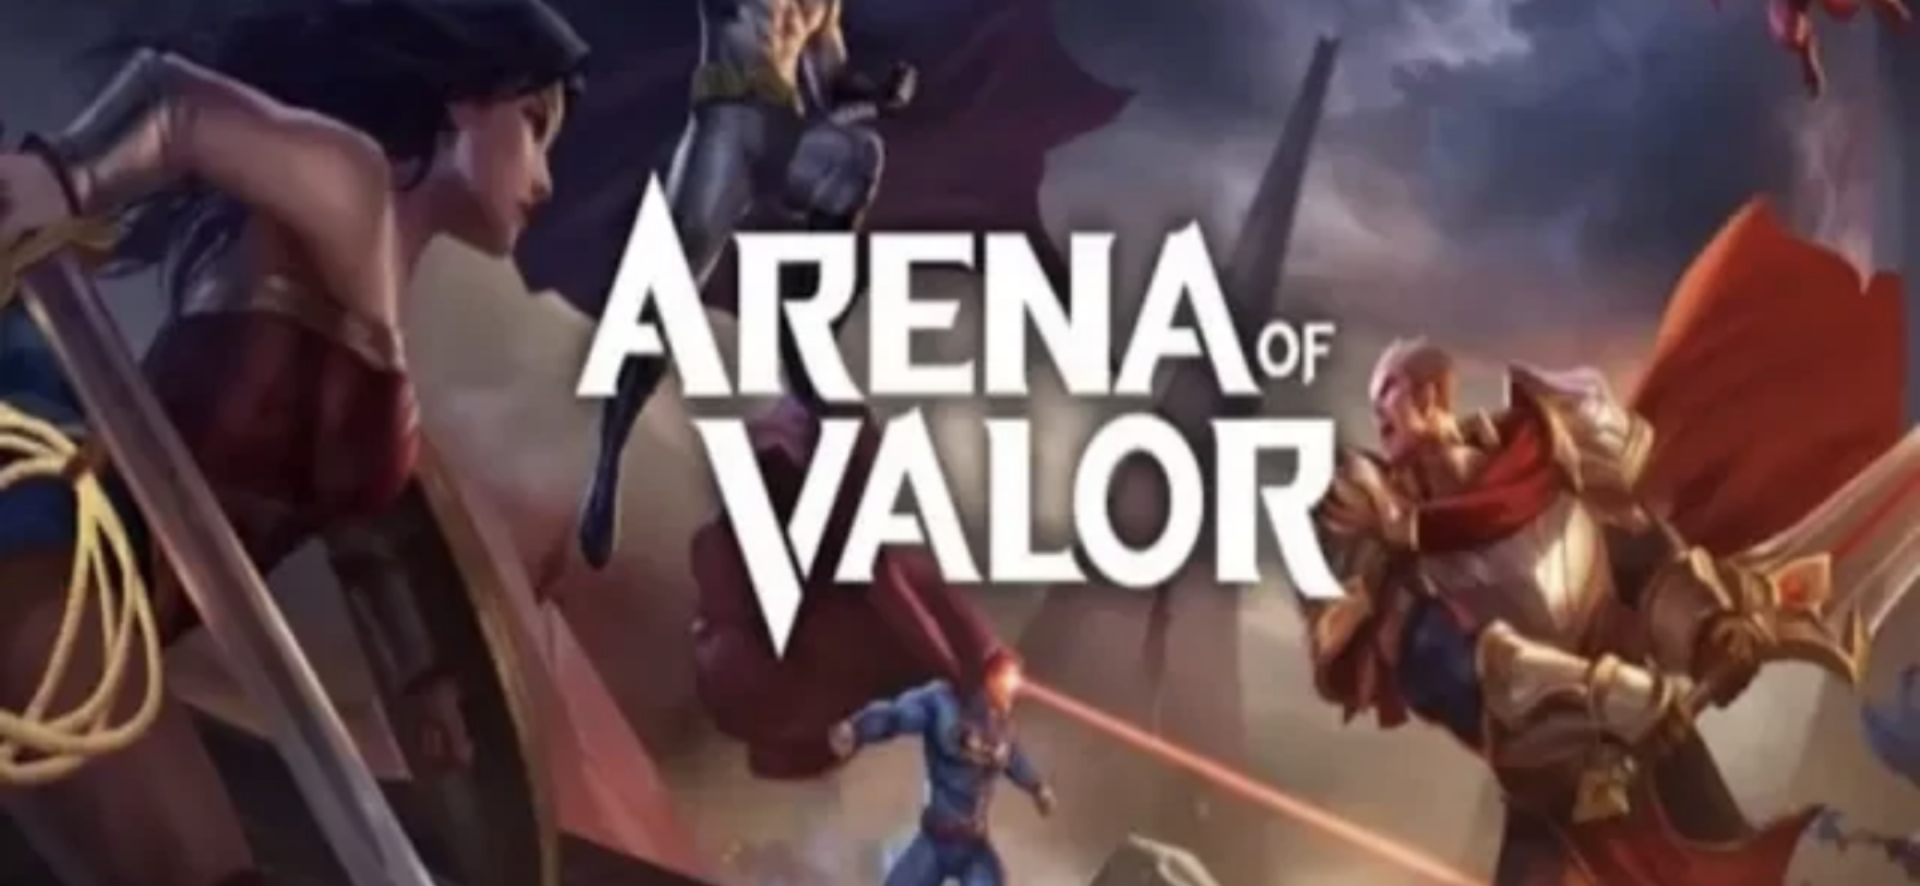 Arena Of Valor (AOV)